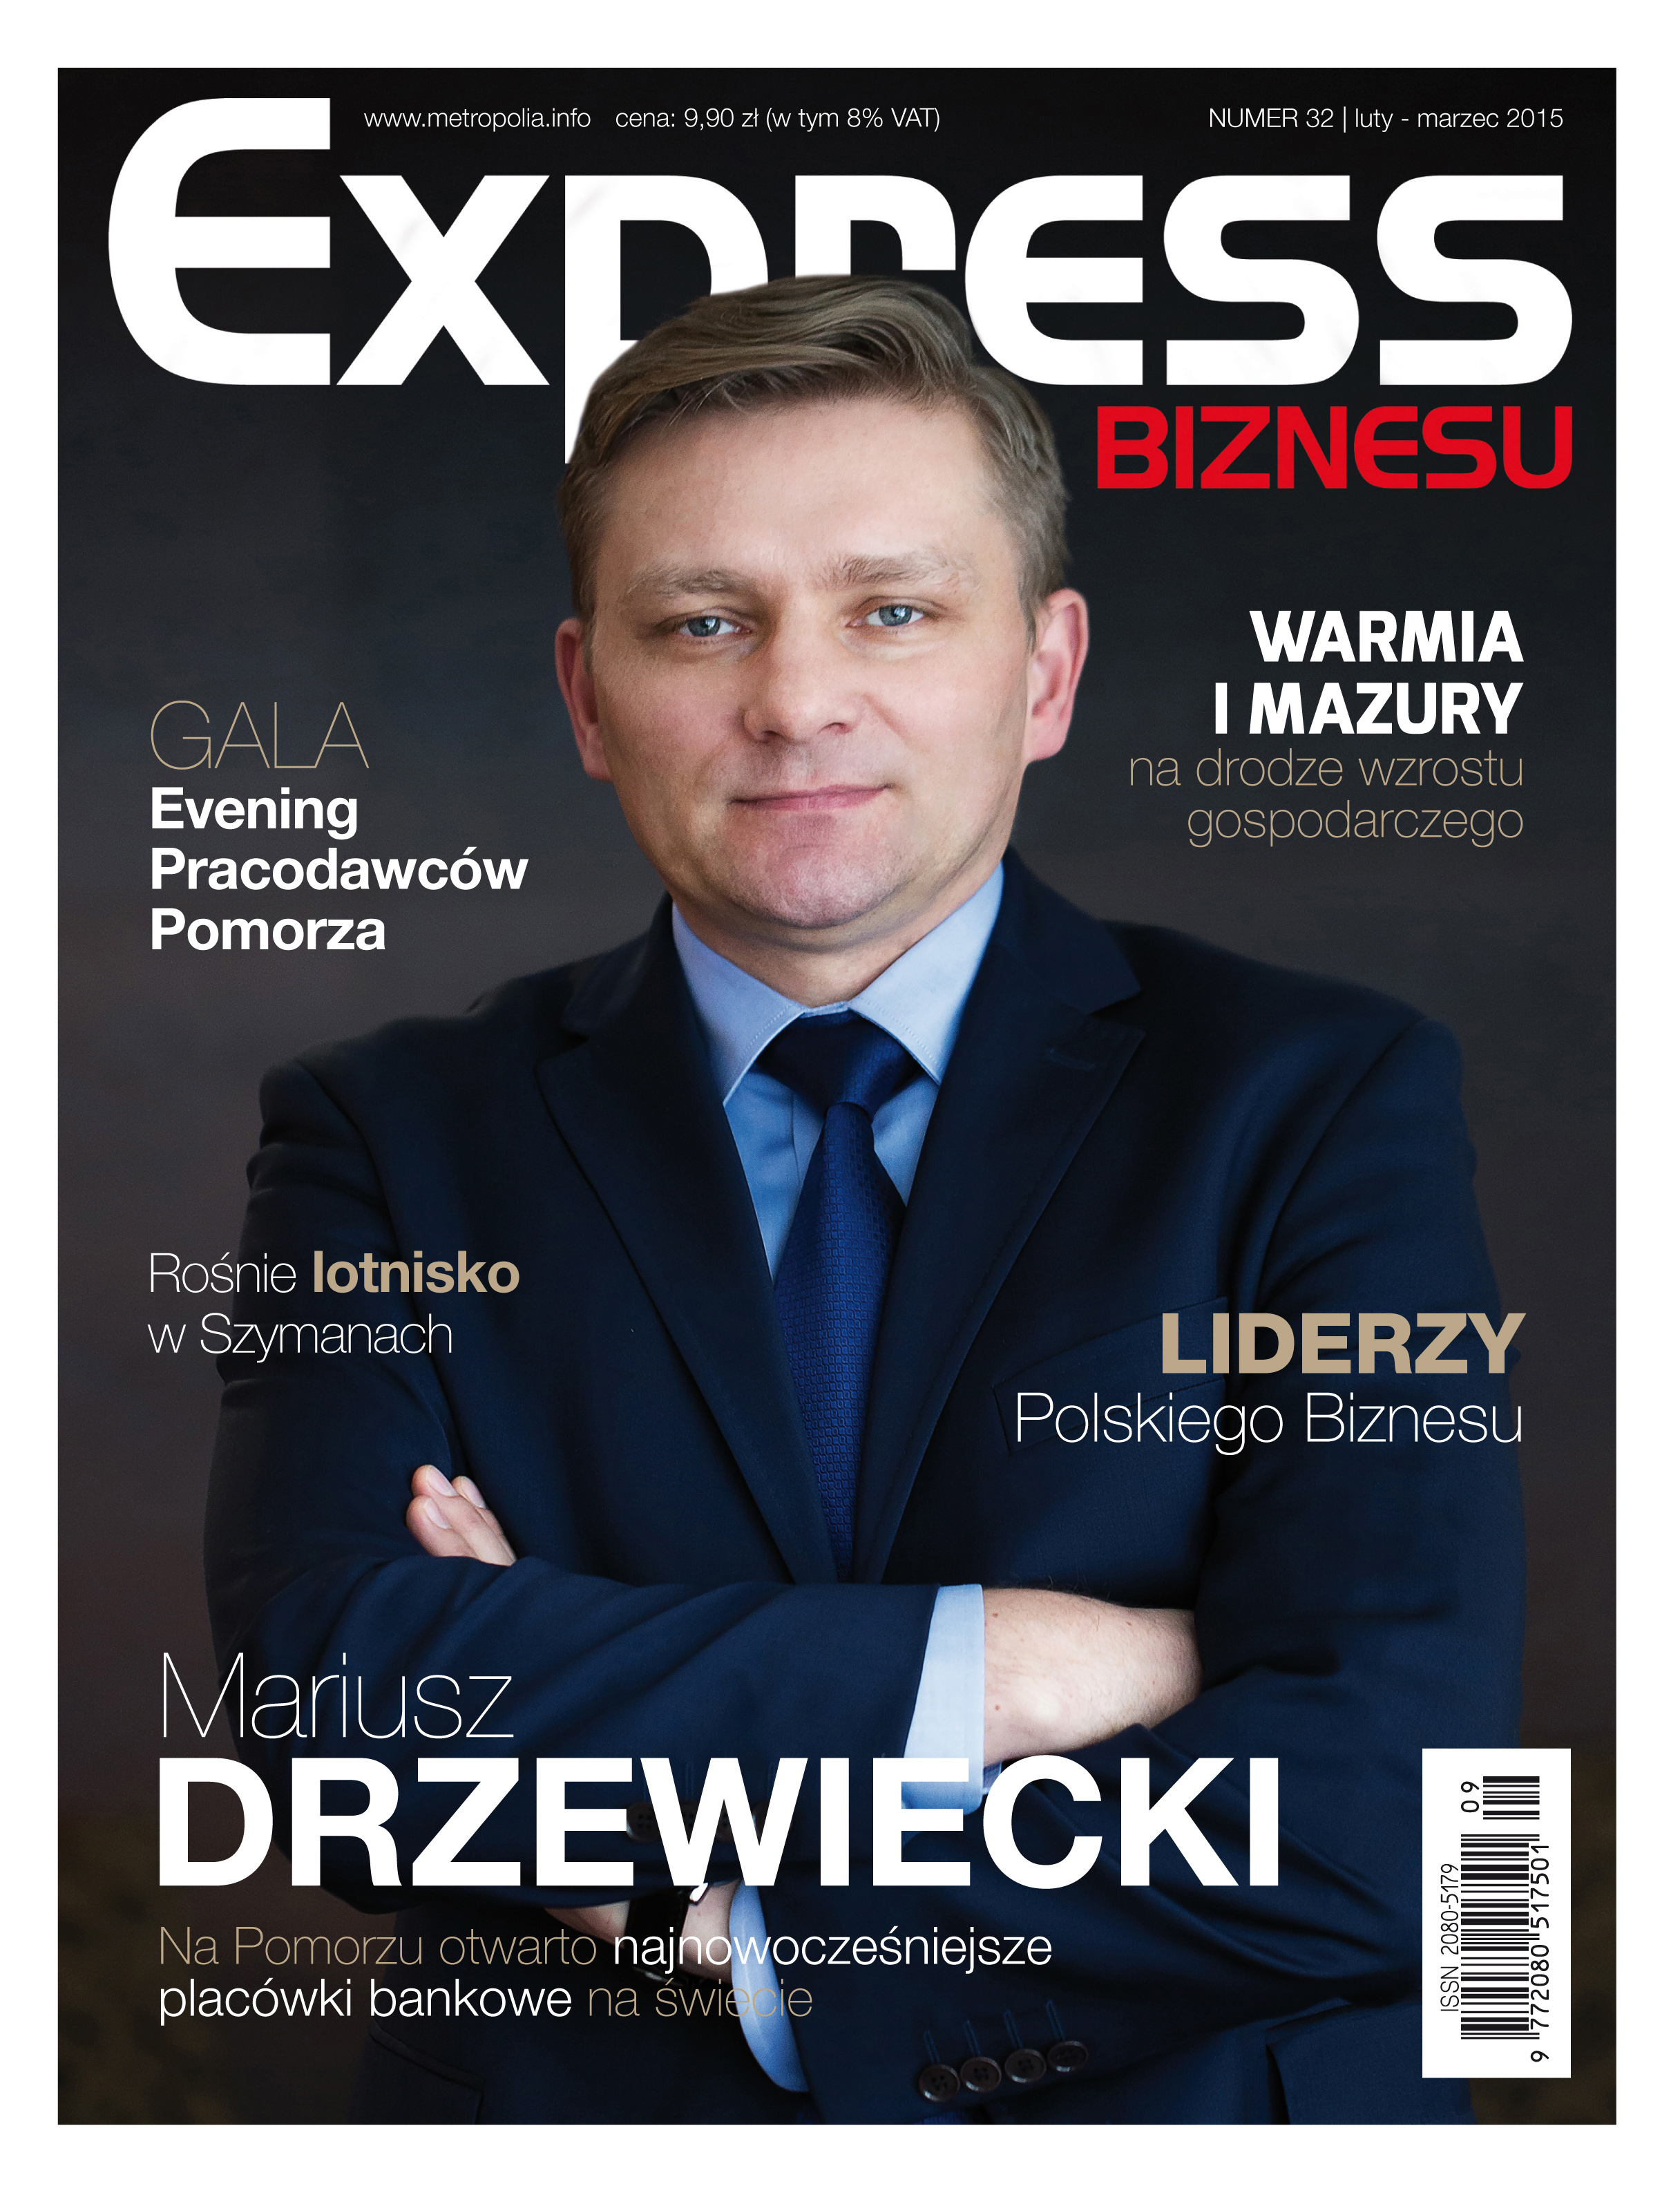 Express Biznesu - nr. 32.pdf